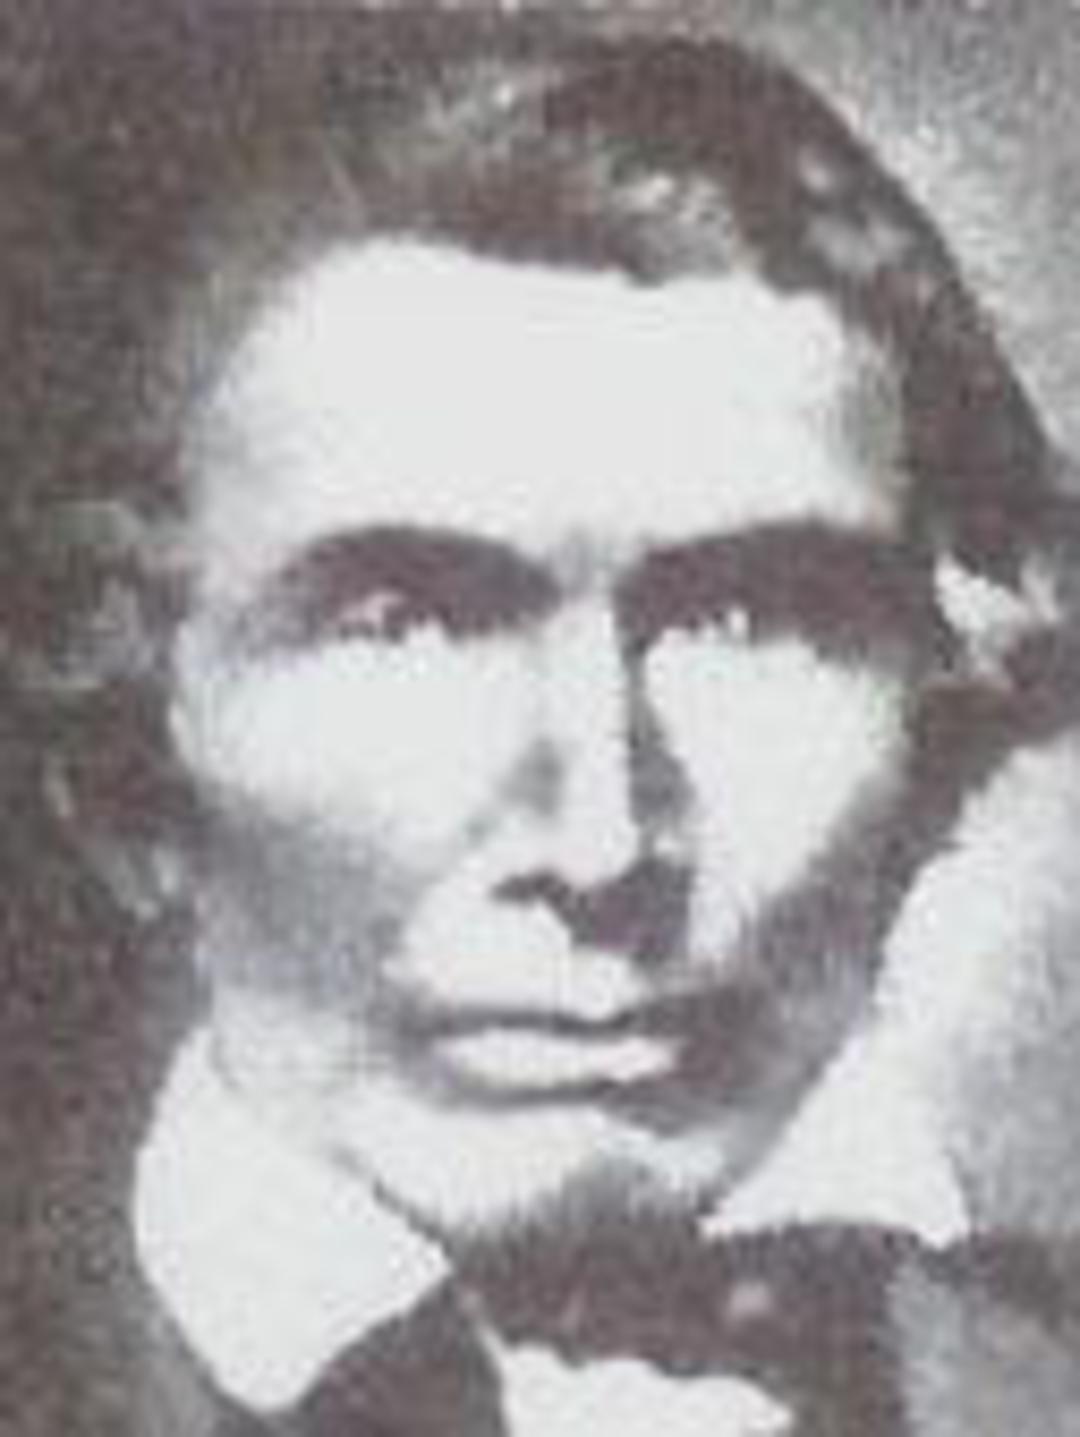 James Nibley (1810 - 1876) Profile